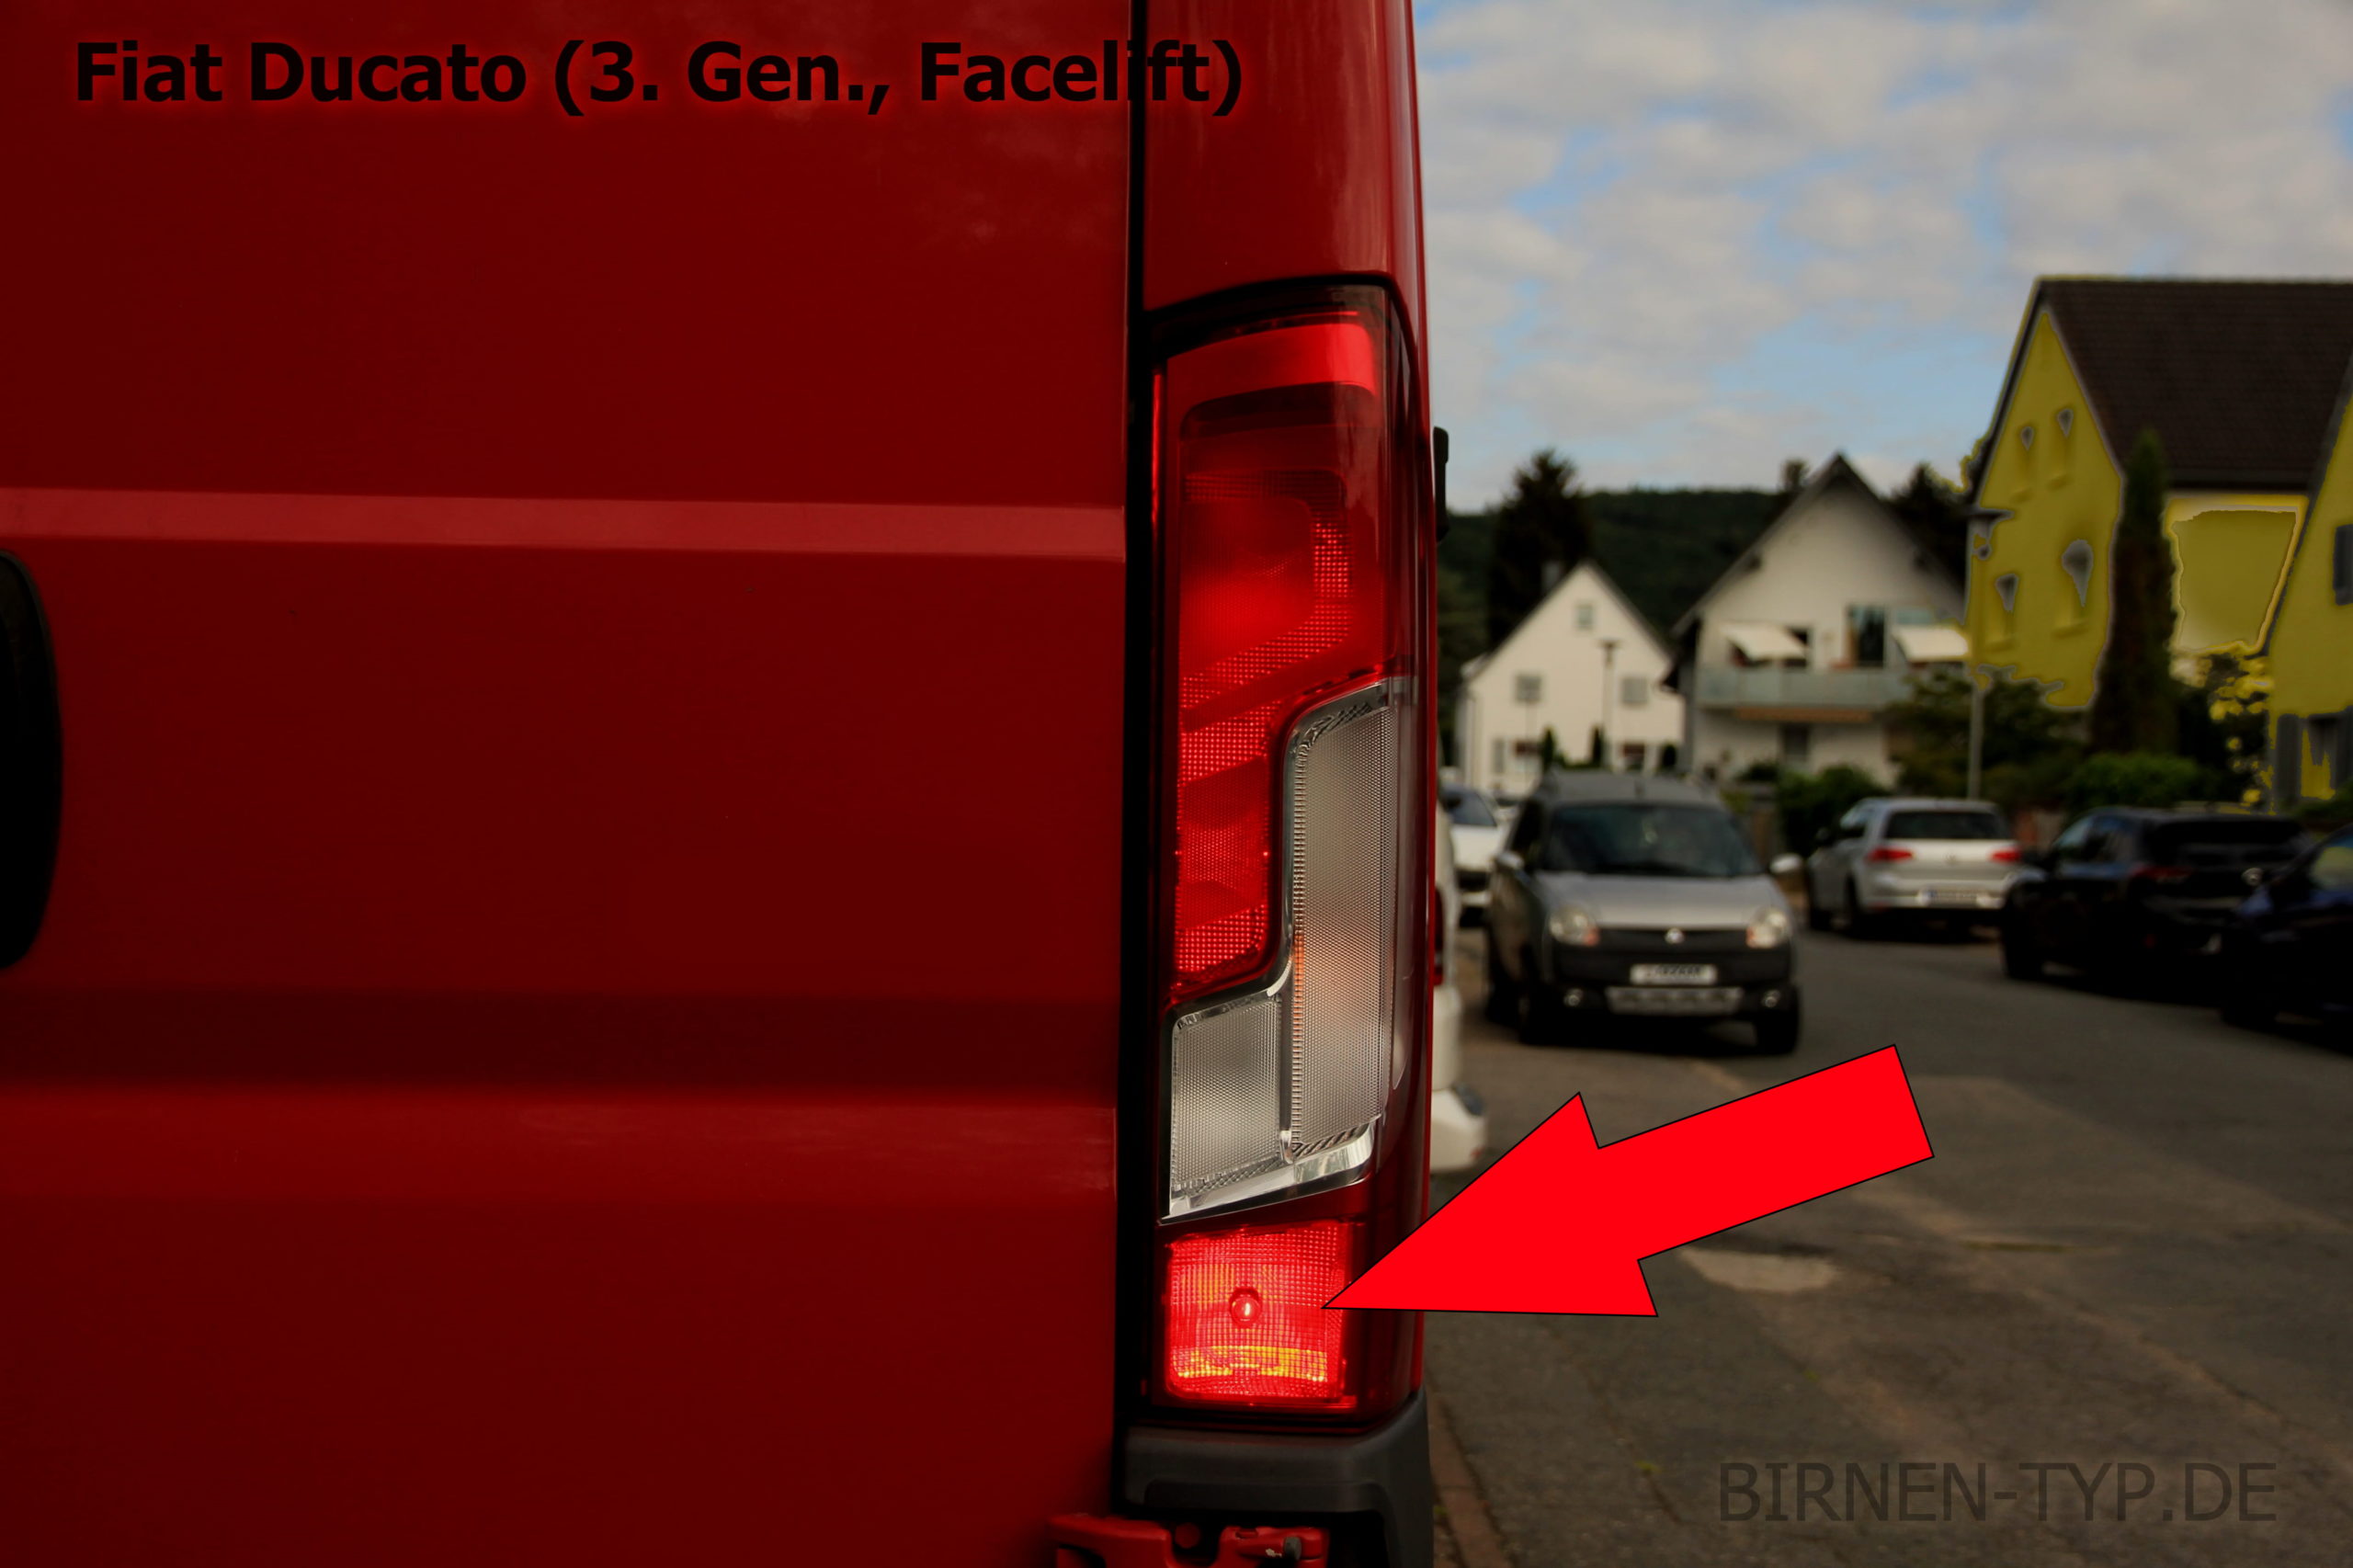 Liste mit allen Birnen für den Fiat Ducato (3. Gen., Facelift) - Birnen -Typ.de